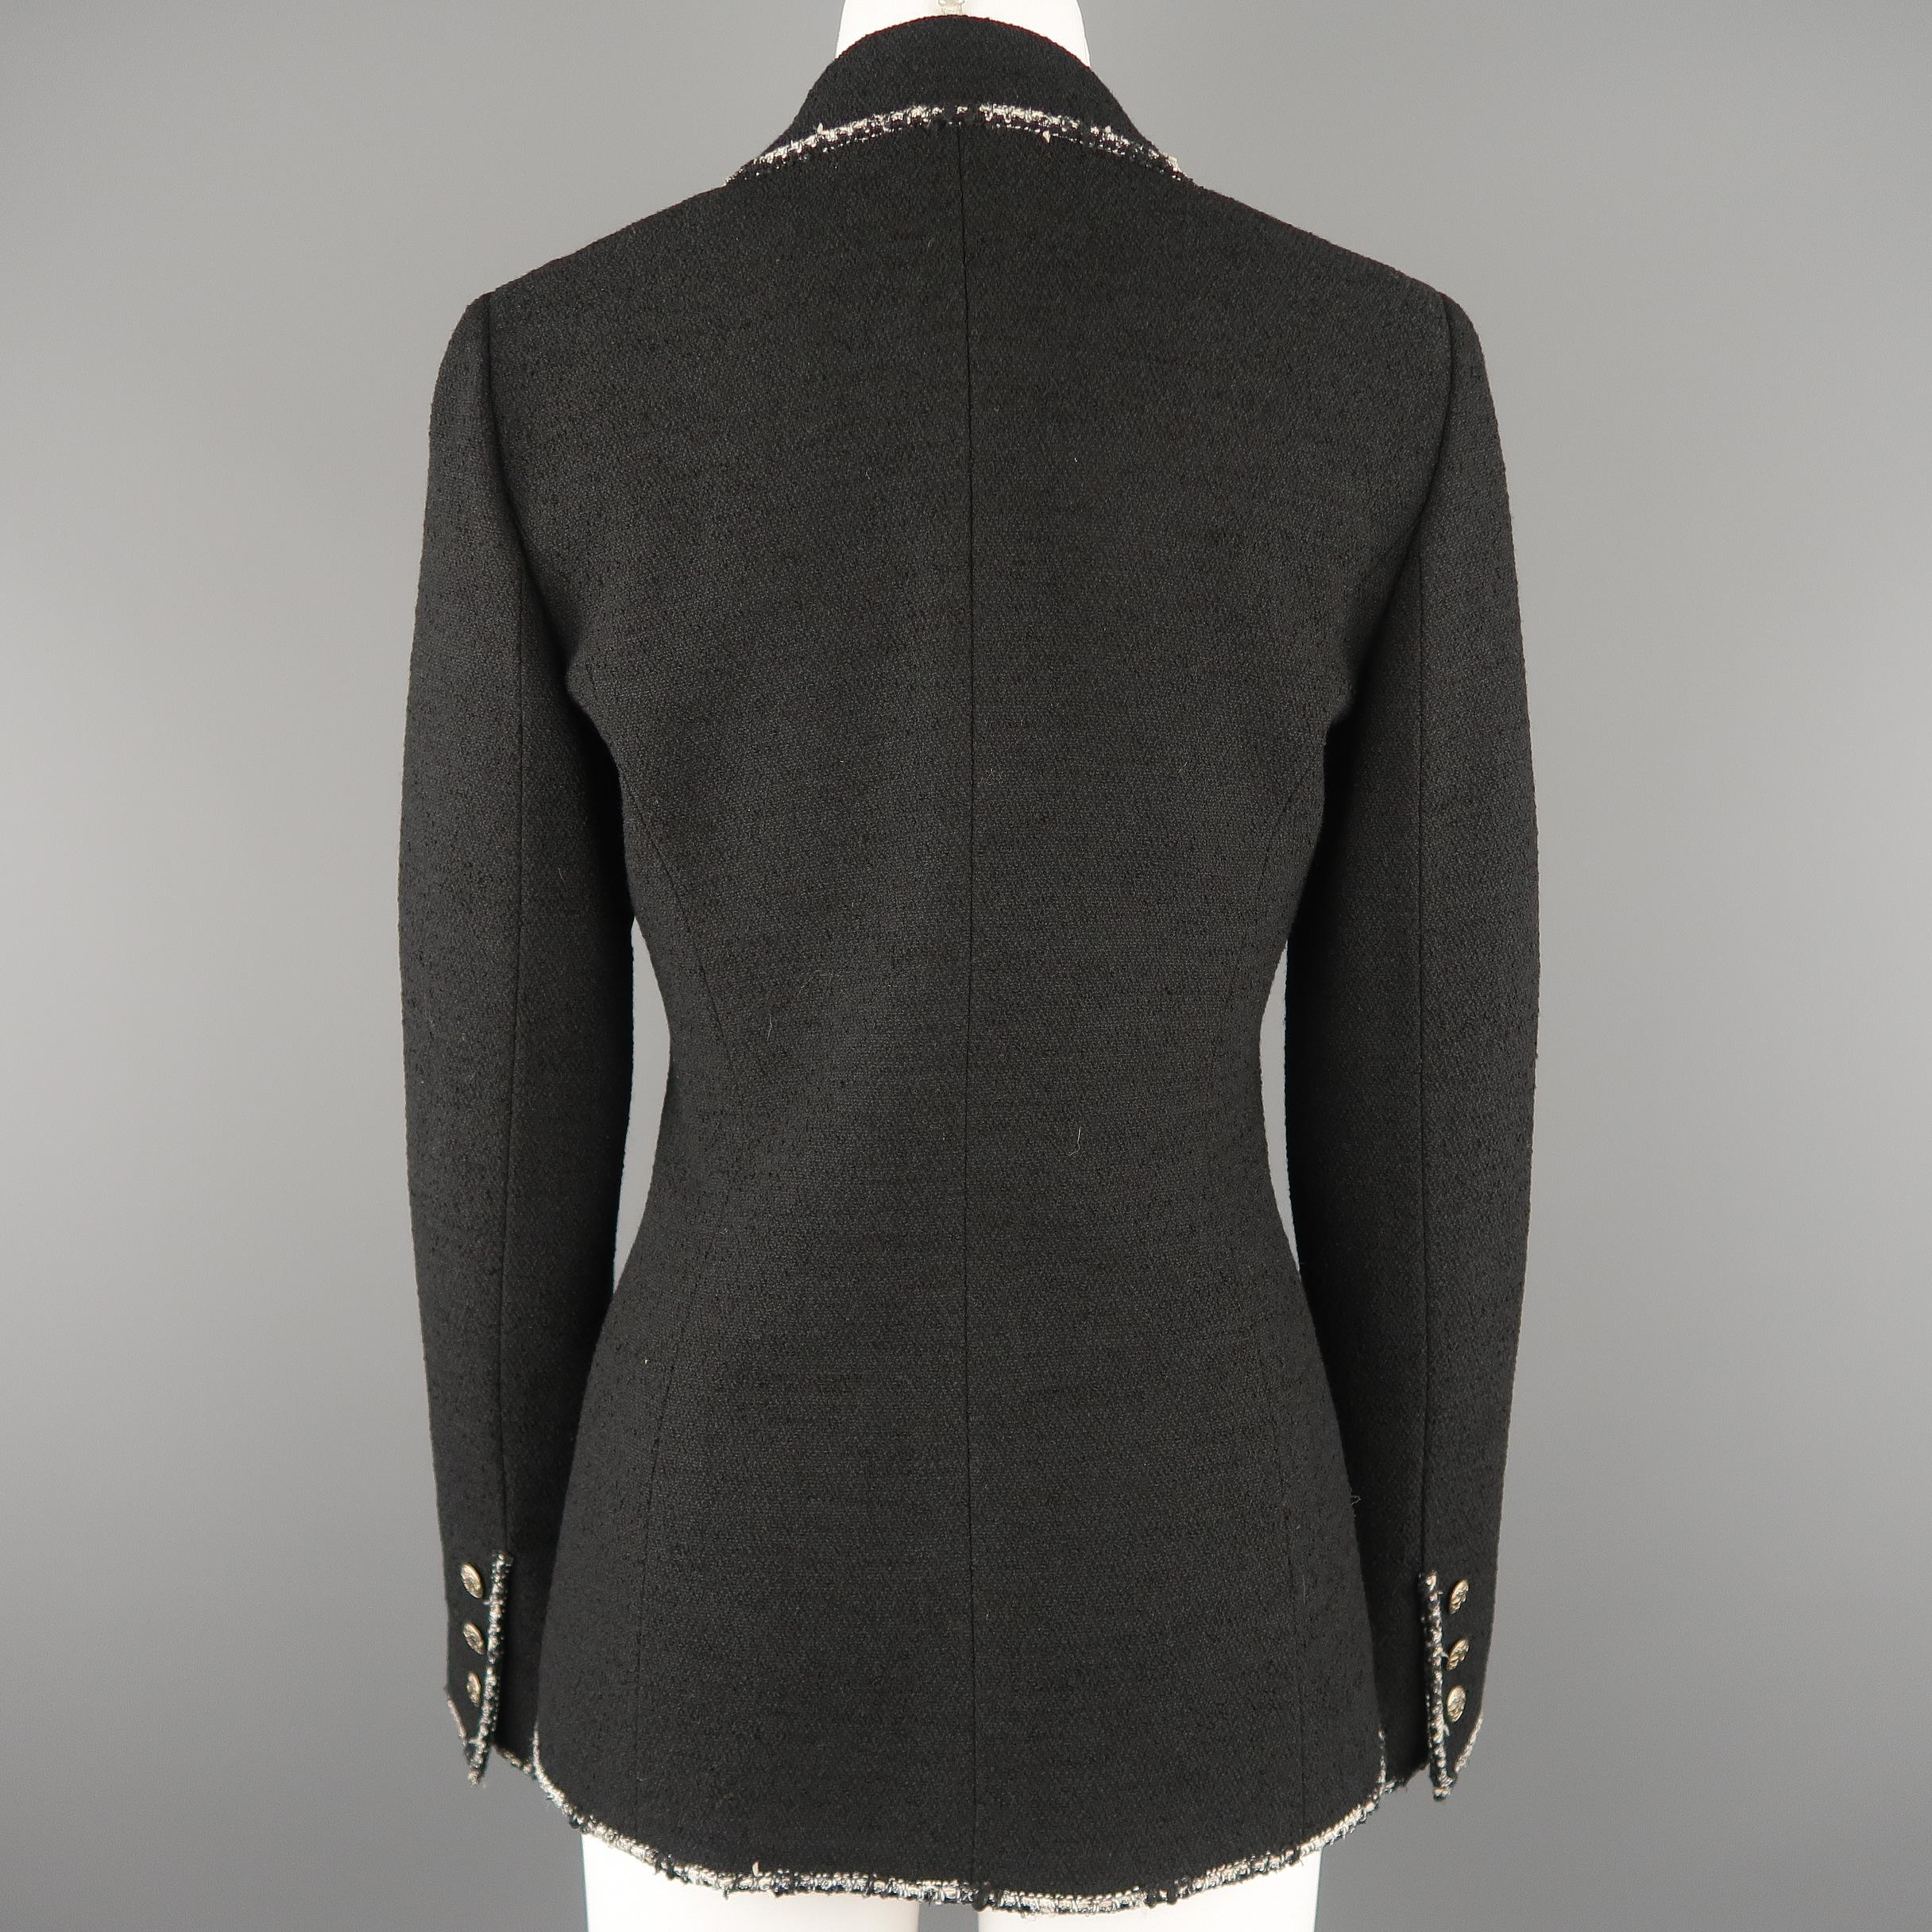 CHANEL Size 6 Black Wool Blend Boucle Trim No. 5 Blazer Jacket 4